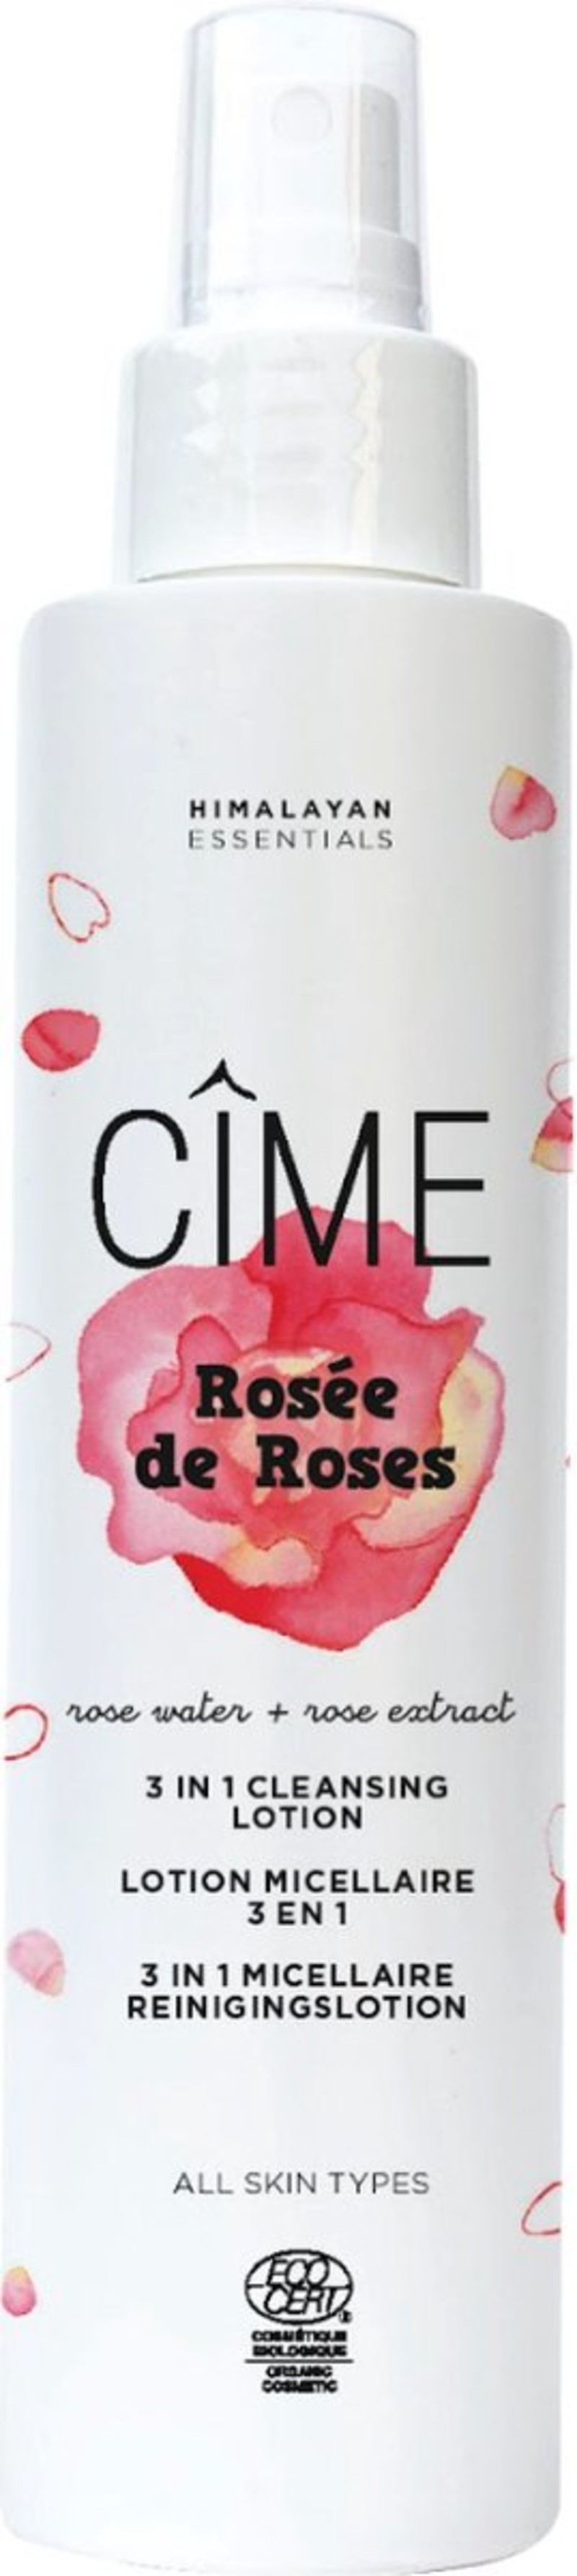 CÎME - Rosée de Roses - micellaire reinigingslotion - 150 ml